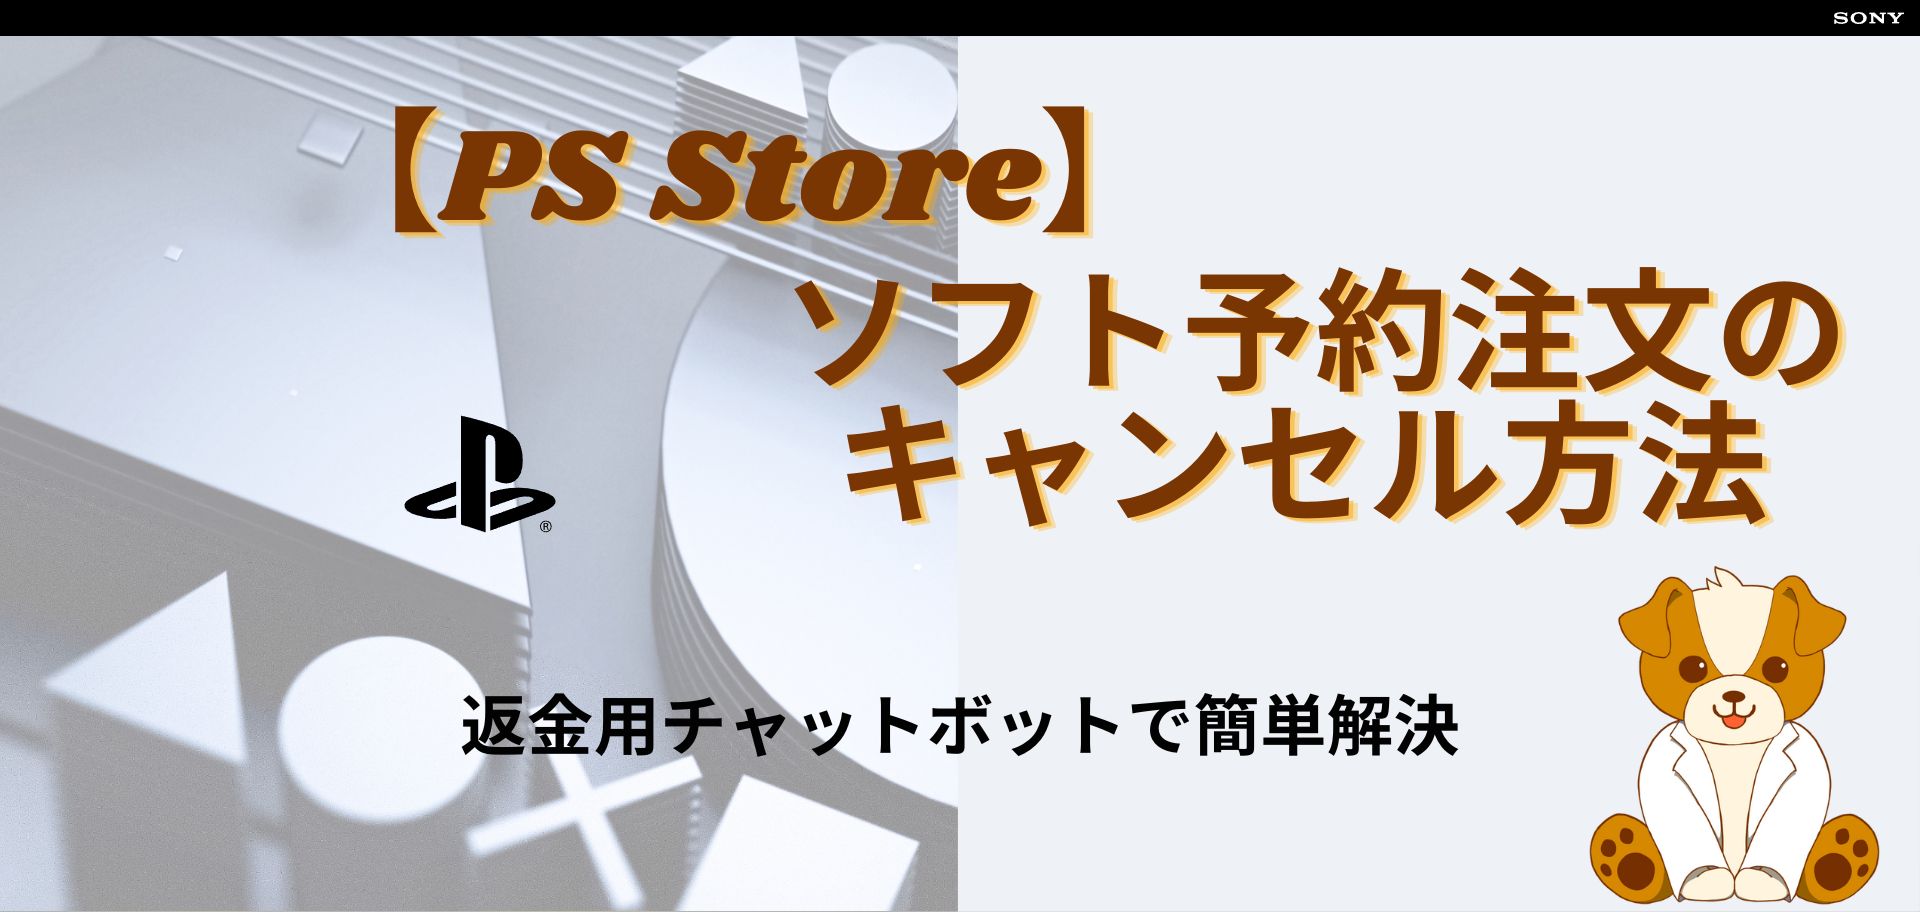 PS Store】ソフト予約注文のキャンセル方法【返金用チャットボット ...